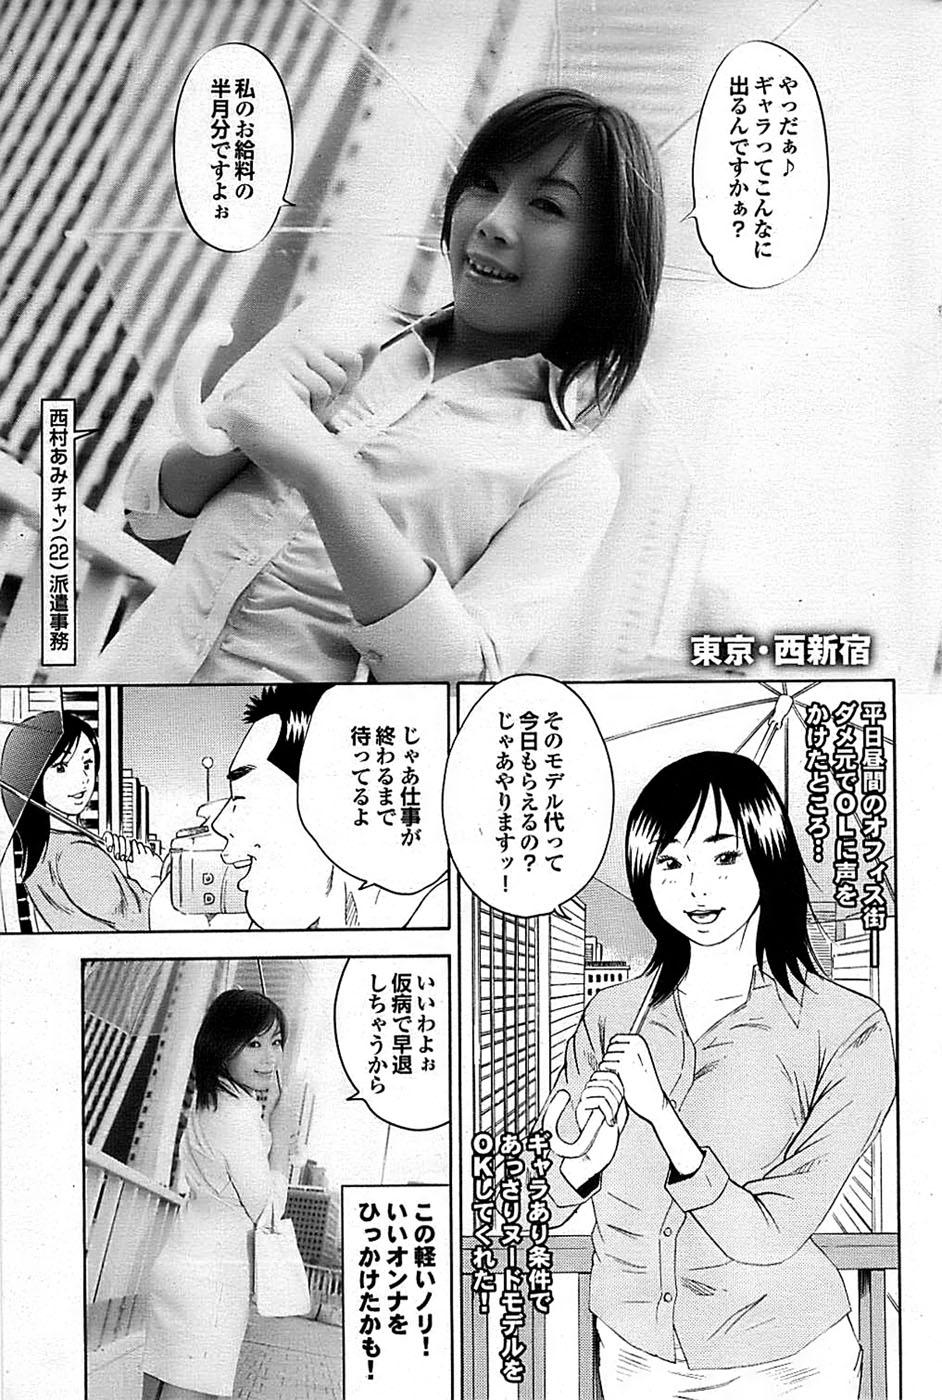 Mitsu-Man 2009-03 Vol. 7 146